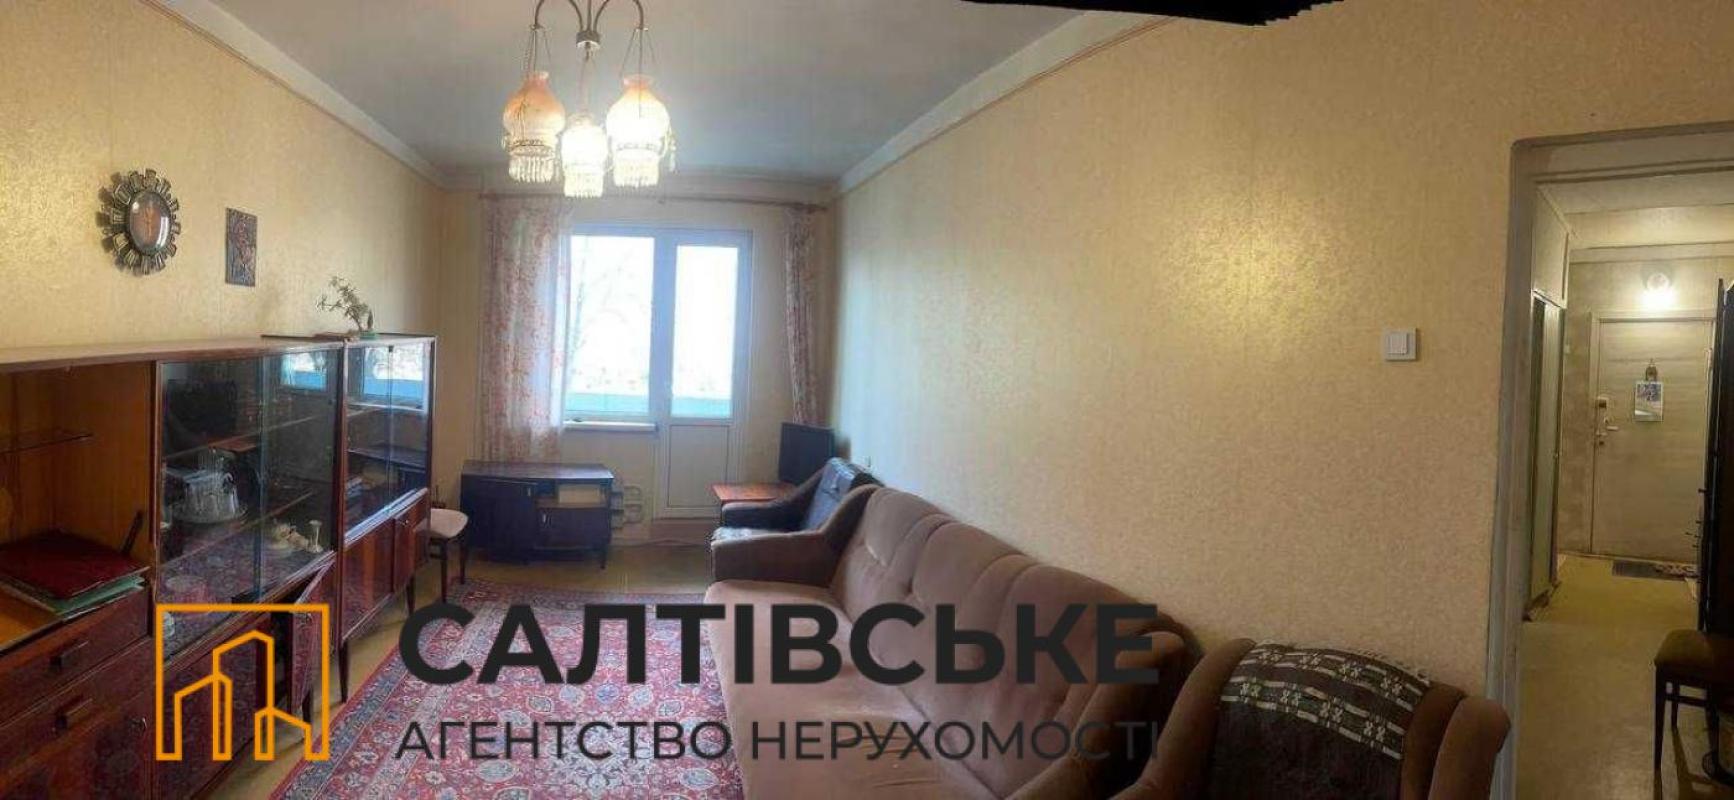 Sale 3 bedroom-(s) apartment 65 sq. m., Akademika Pavlova Street 162б